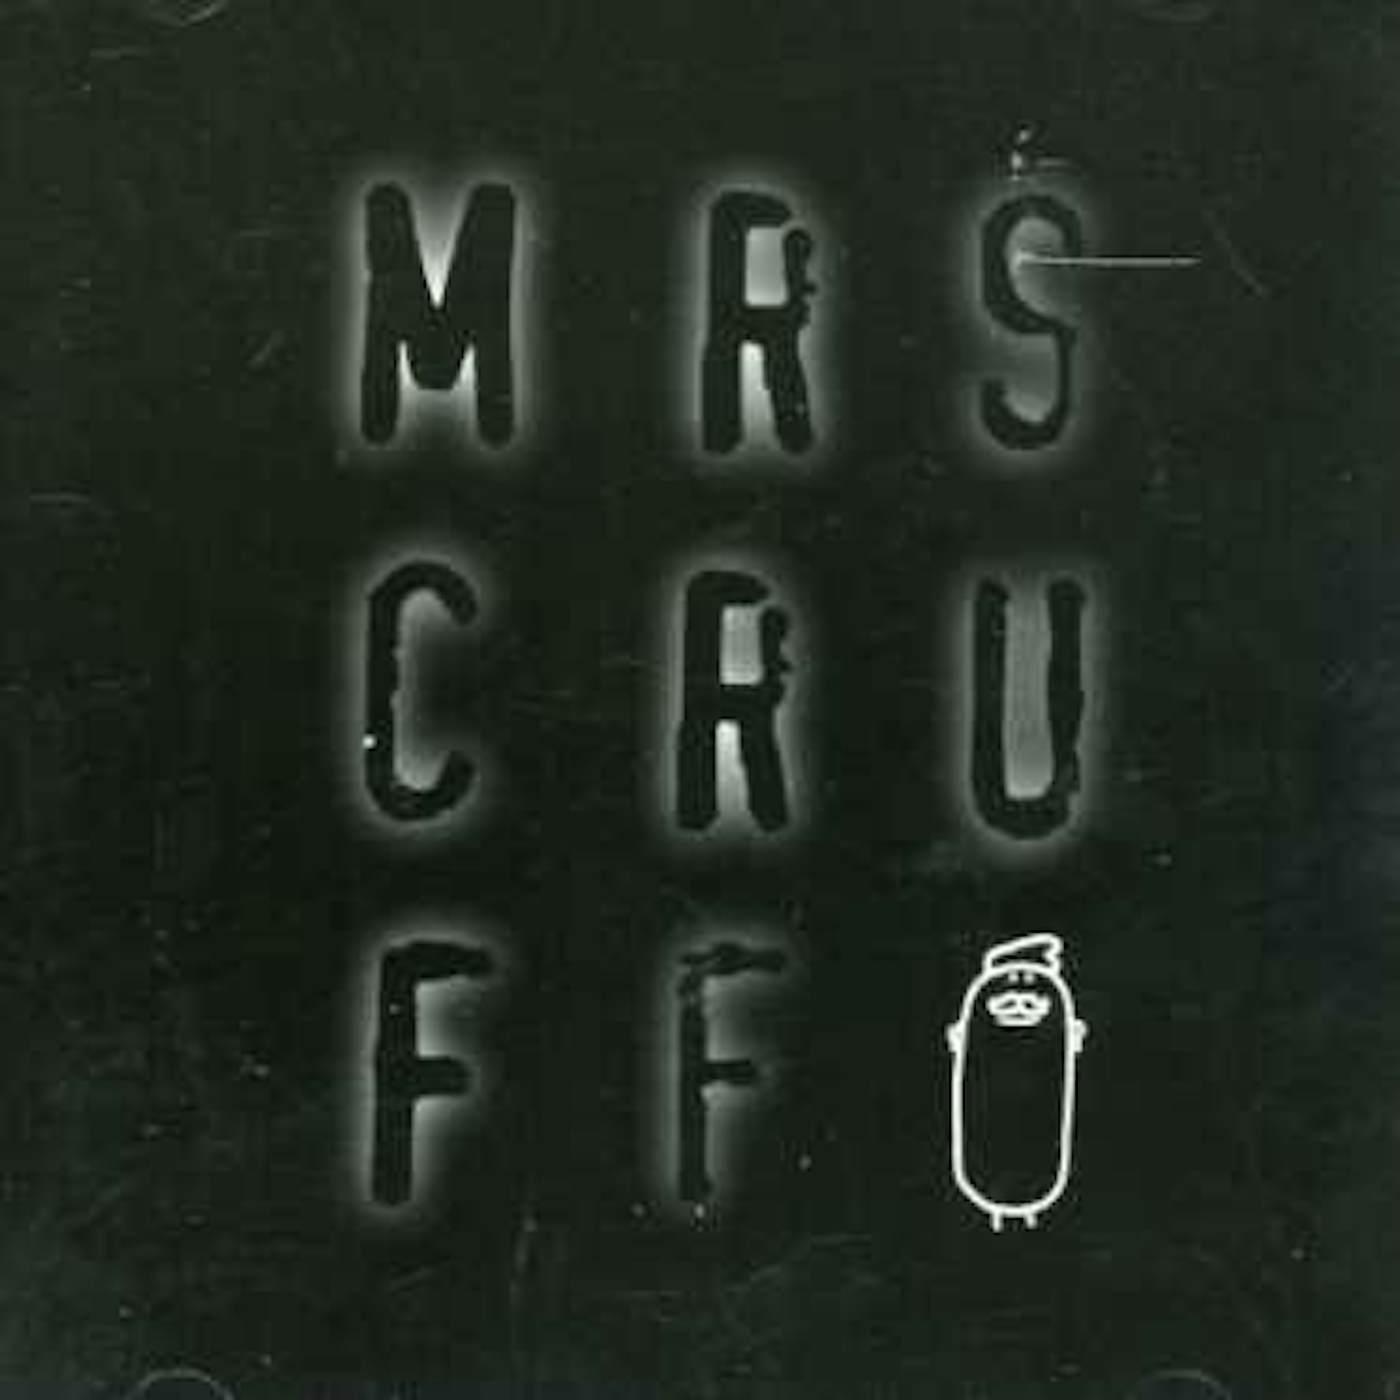 Mr. Scruff CD